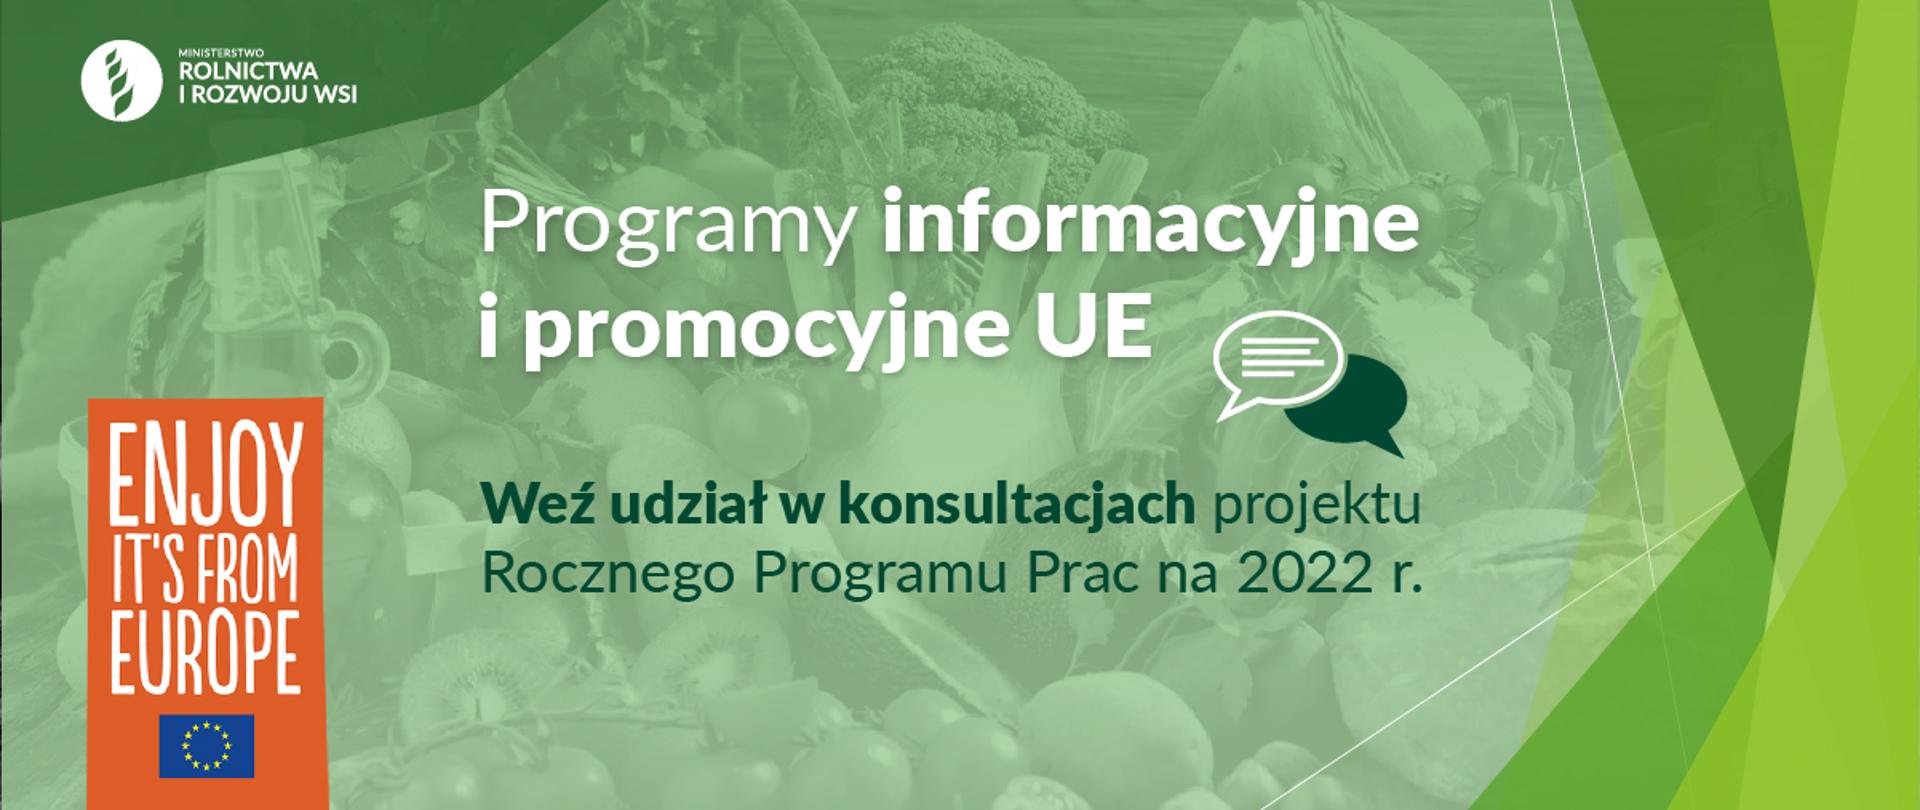 infografika do komunikatu "Programy informacyjne i promocyjne UE – konsultacje Rocznego Programu Prac na 2022 r."